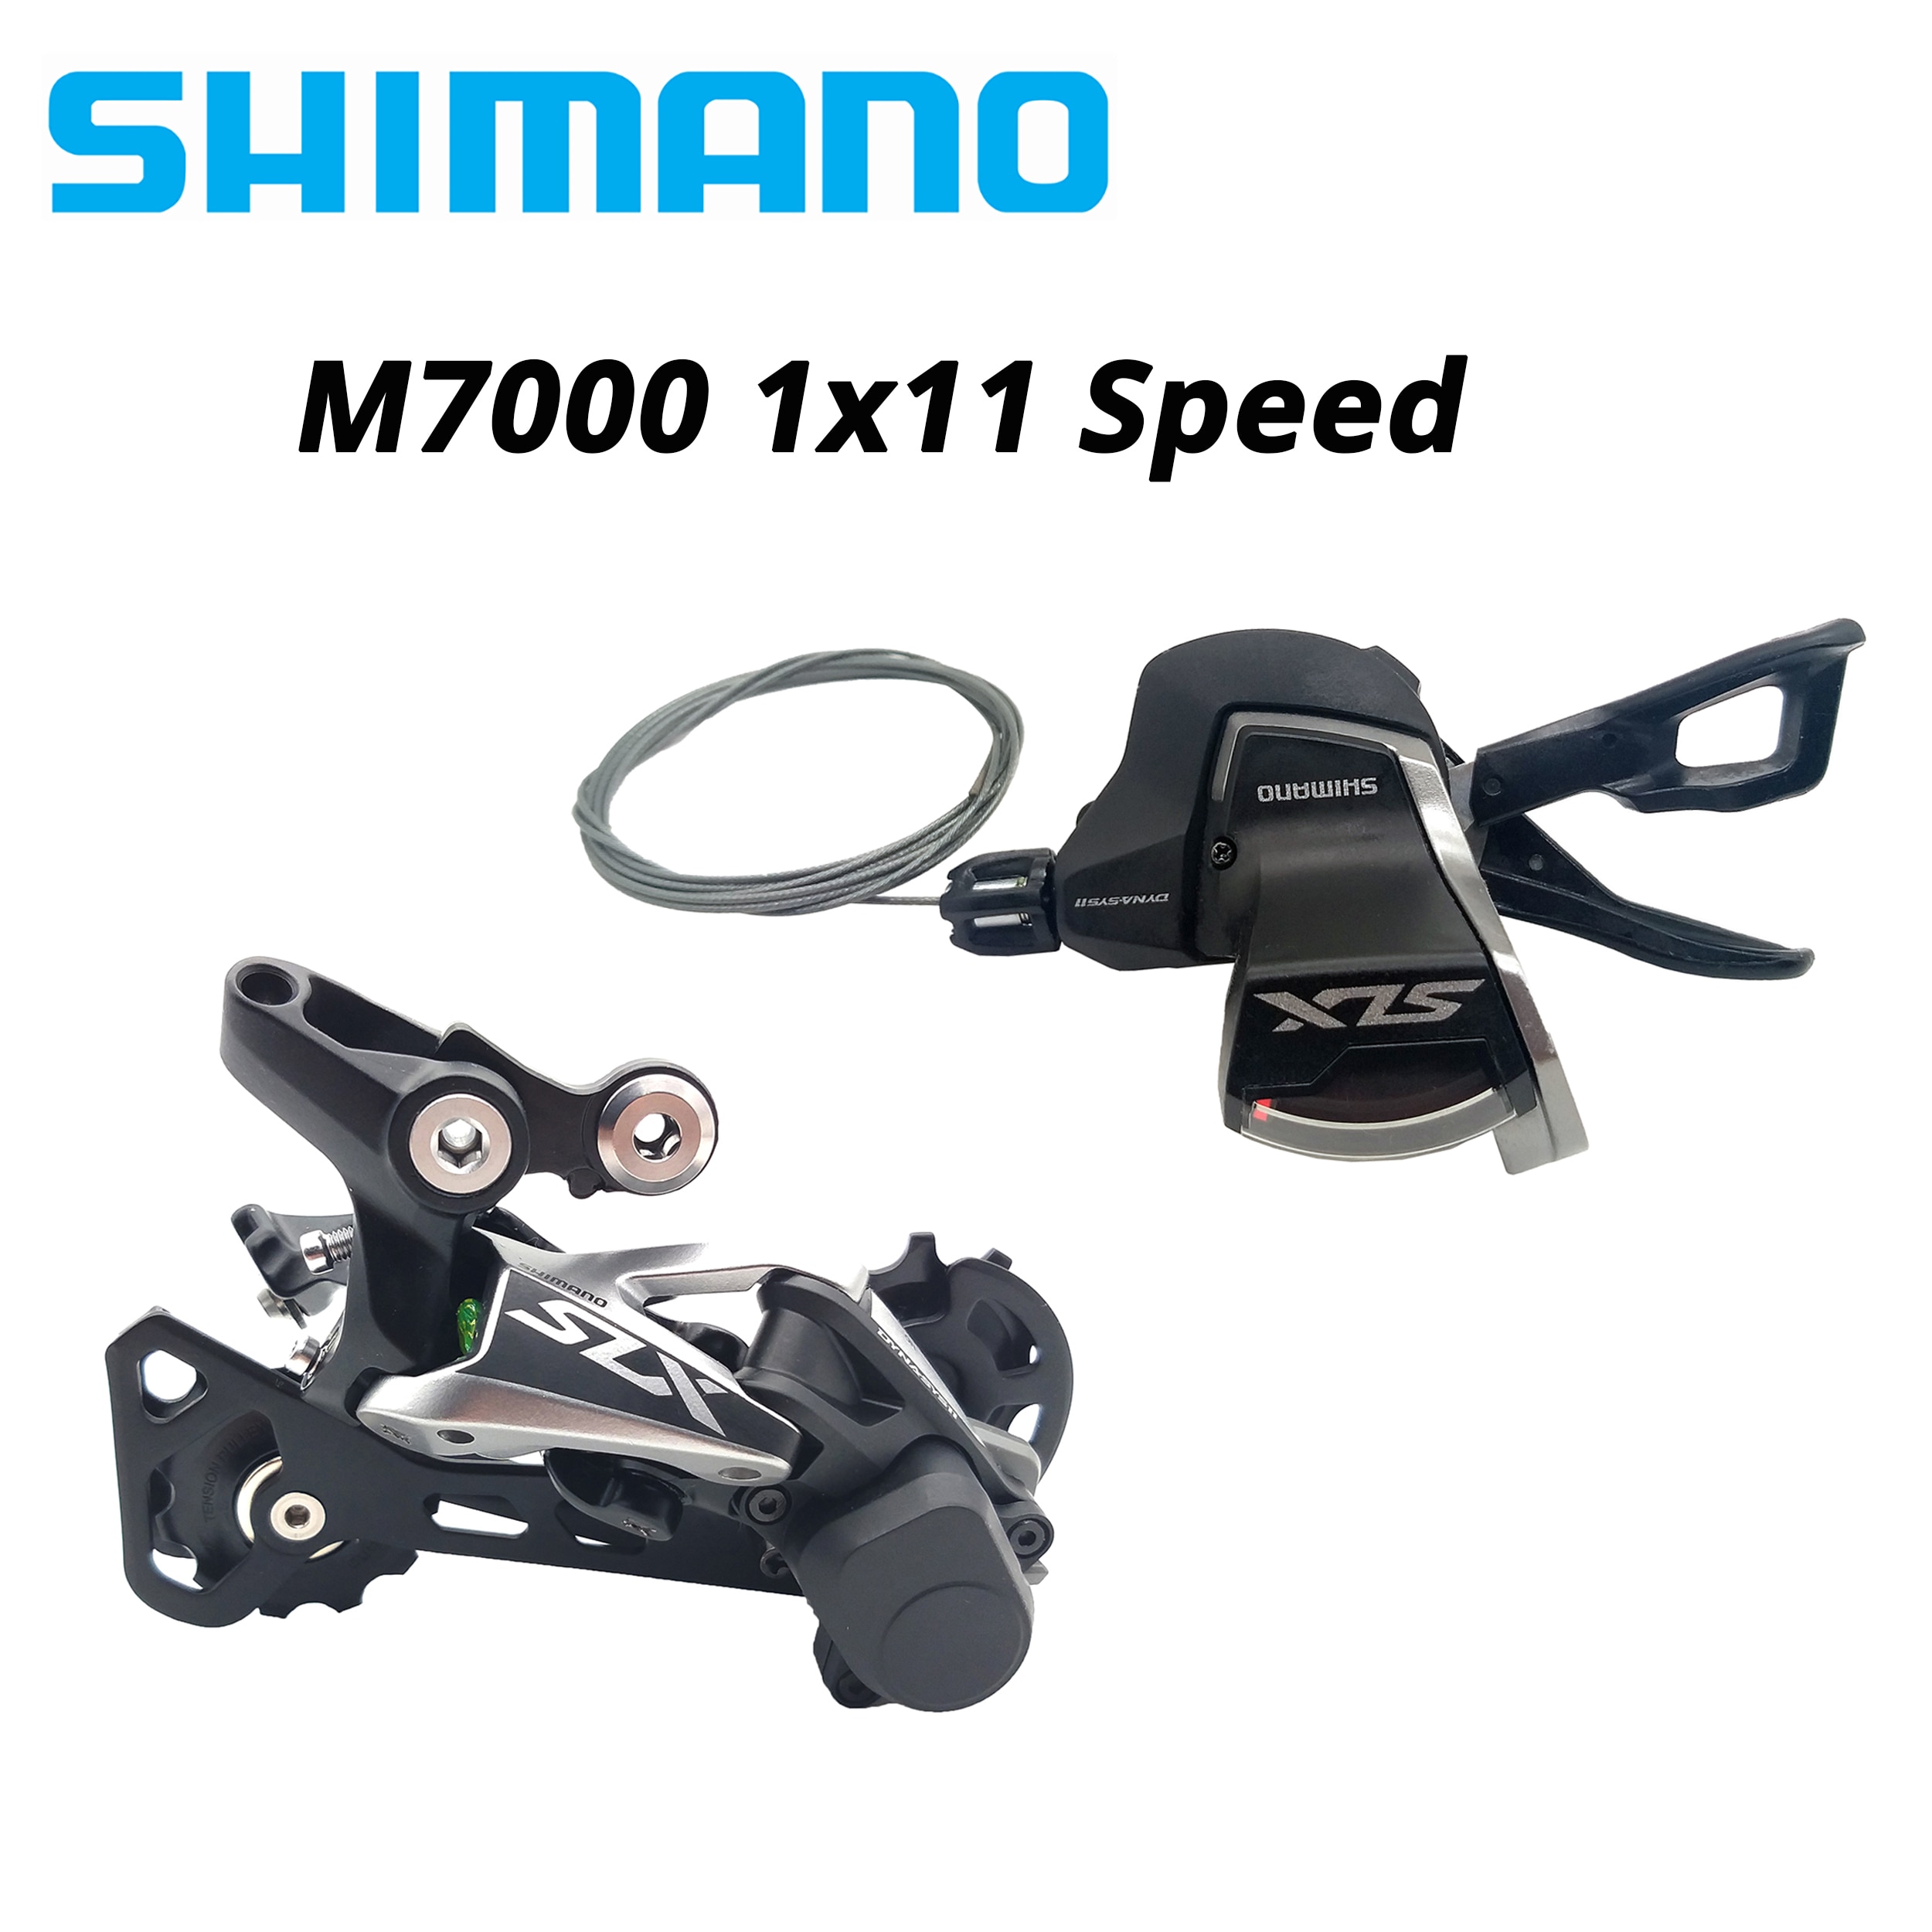 shimano slx m7000 shifter